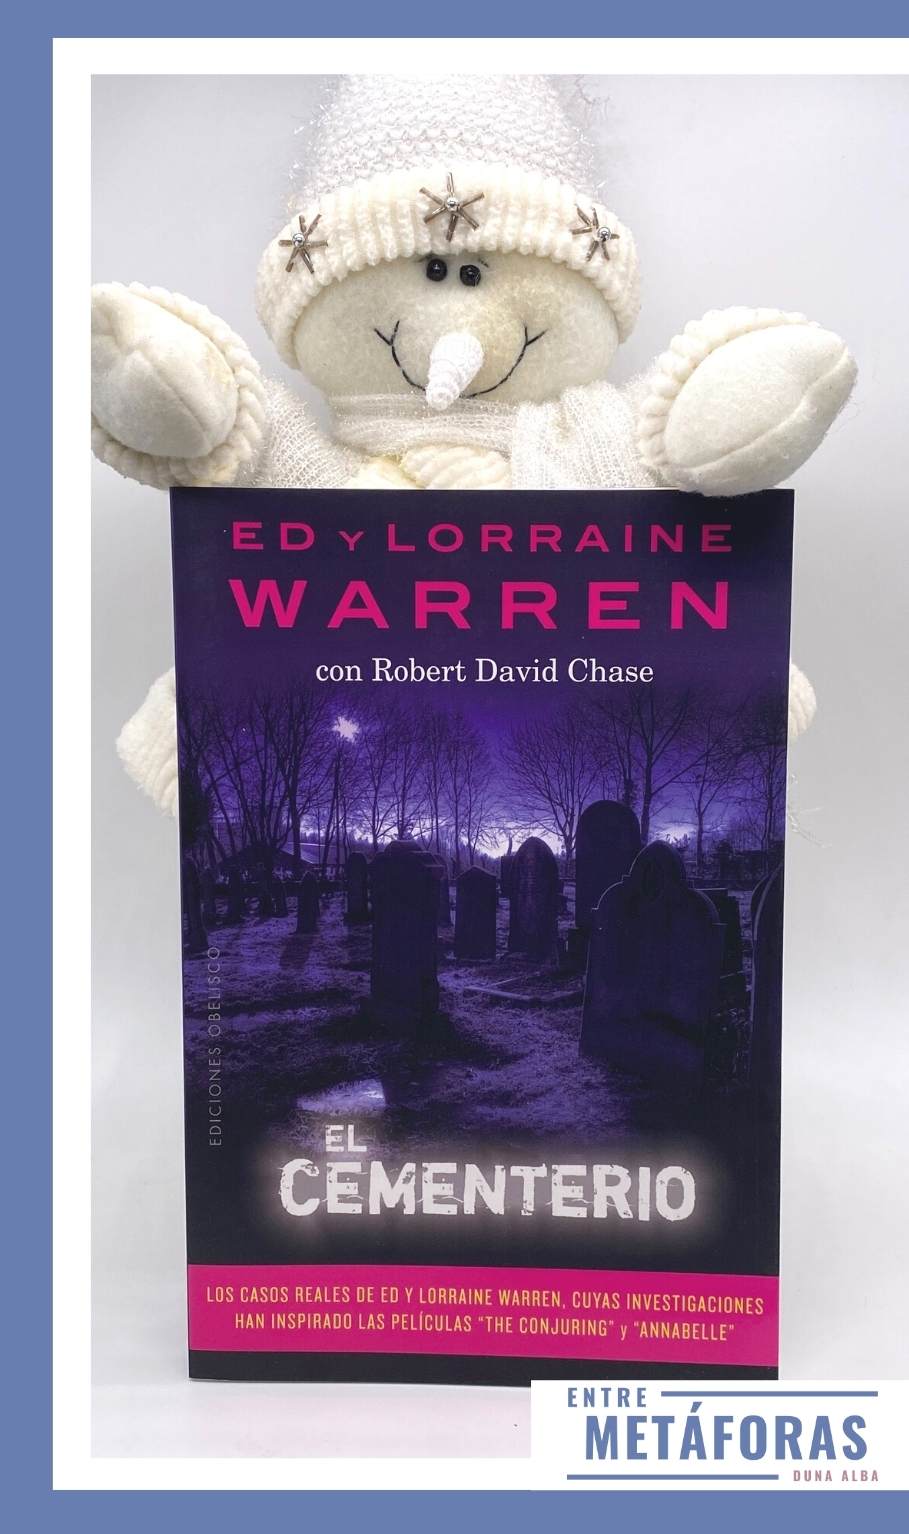 El cementerio, de Robert David Chase, Ed y Lorraine Warren